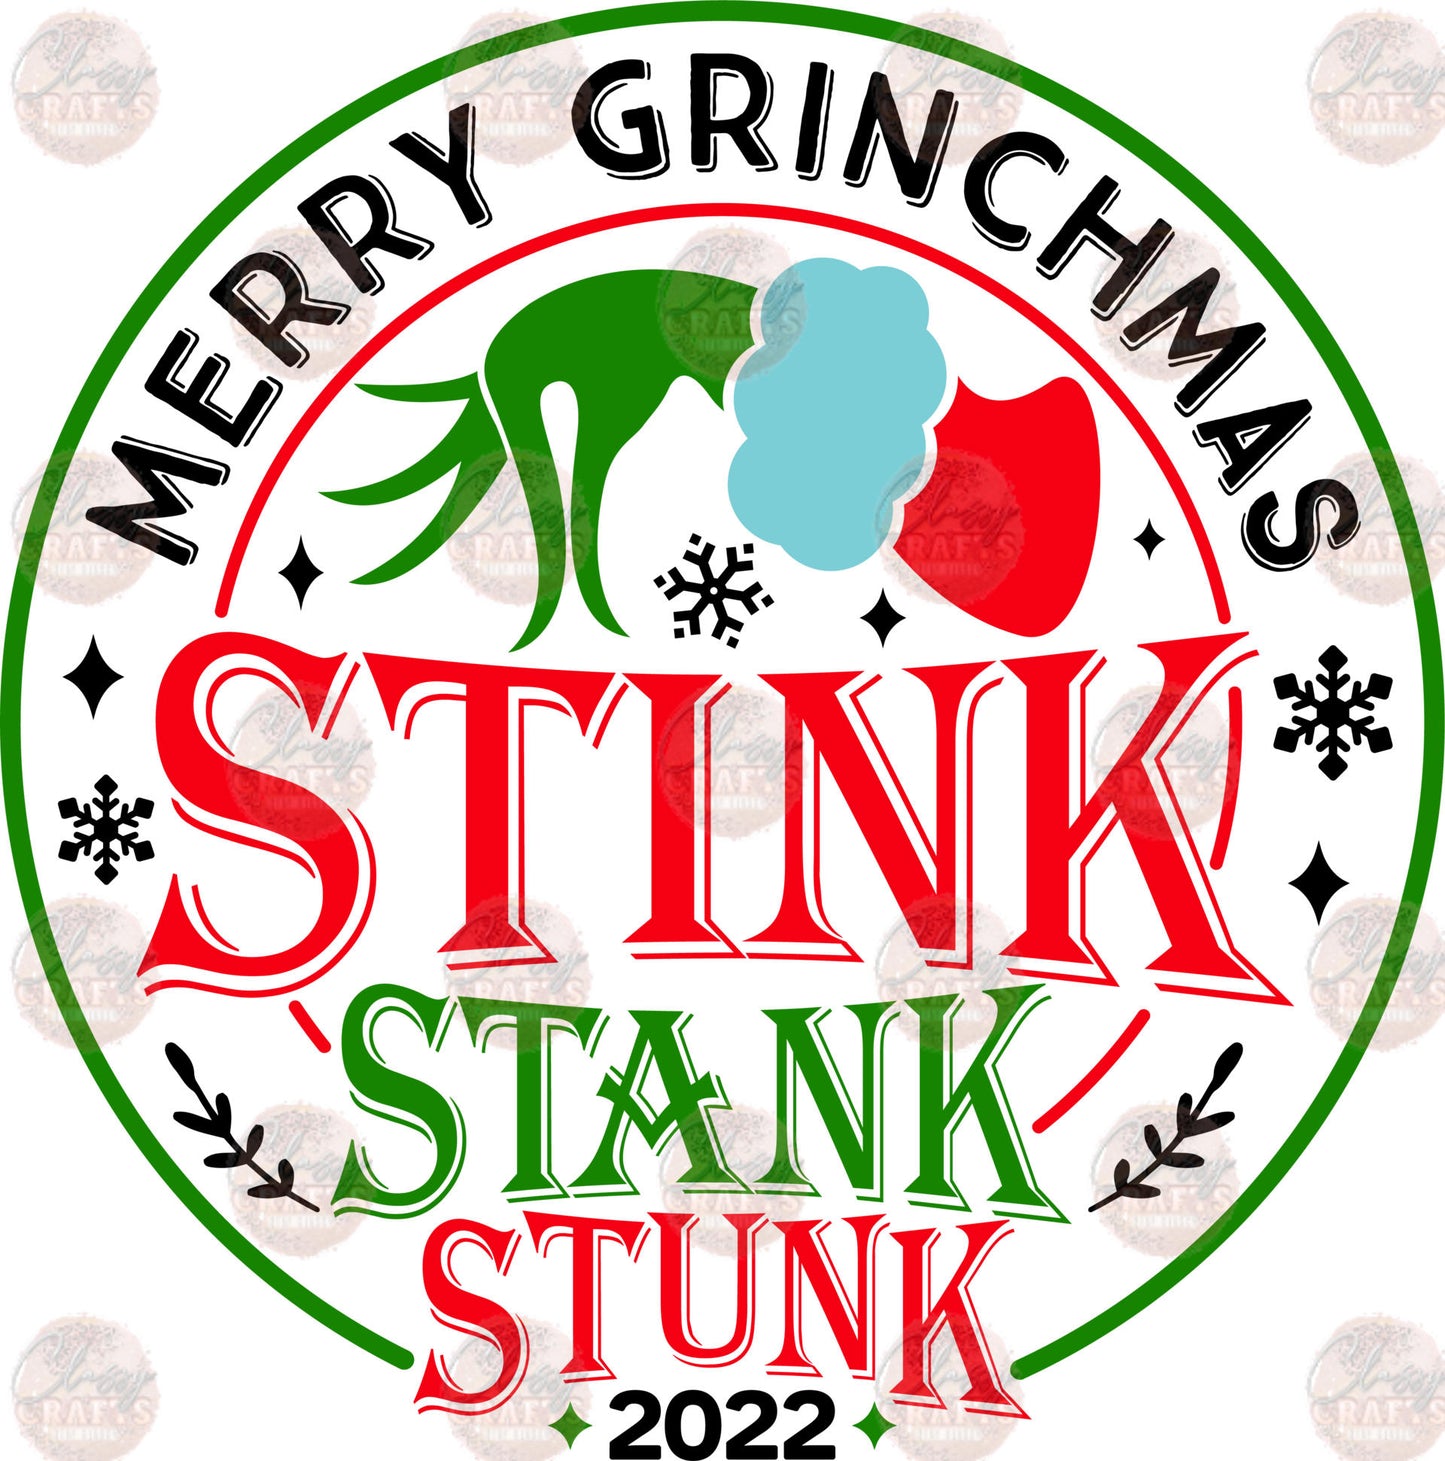 Stink Stank Stunk - Sublimation Transfer